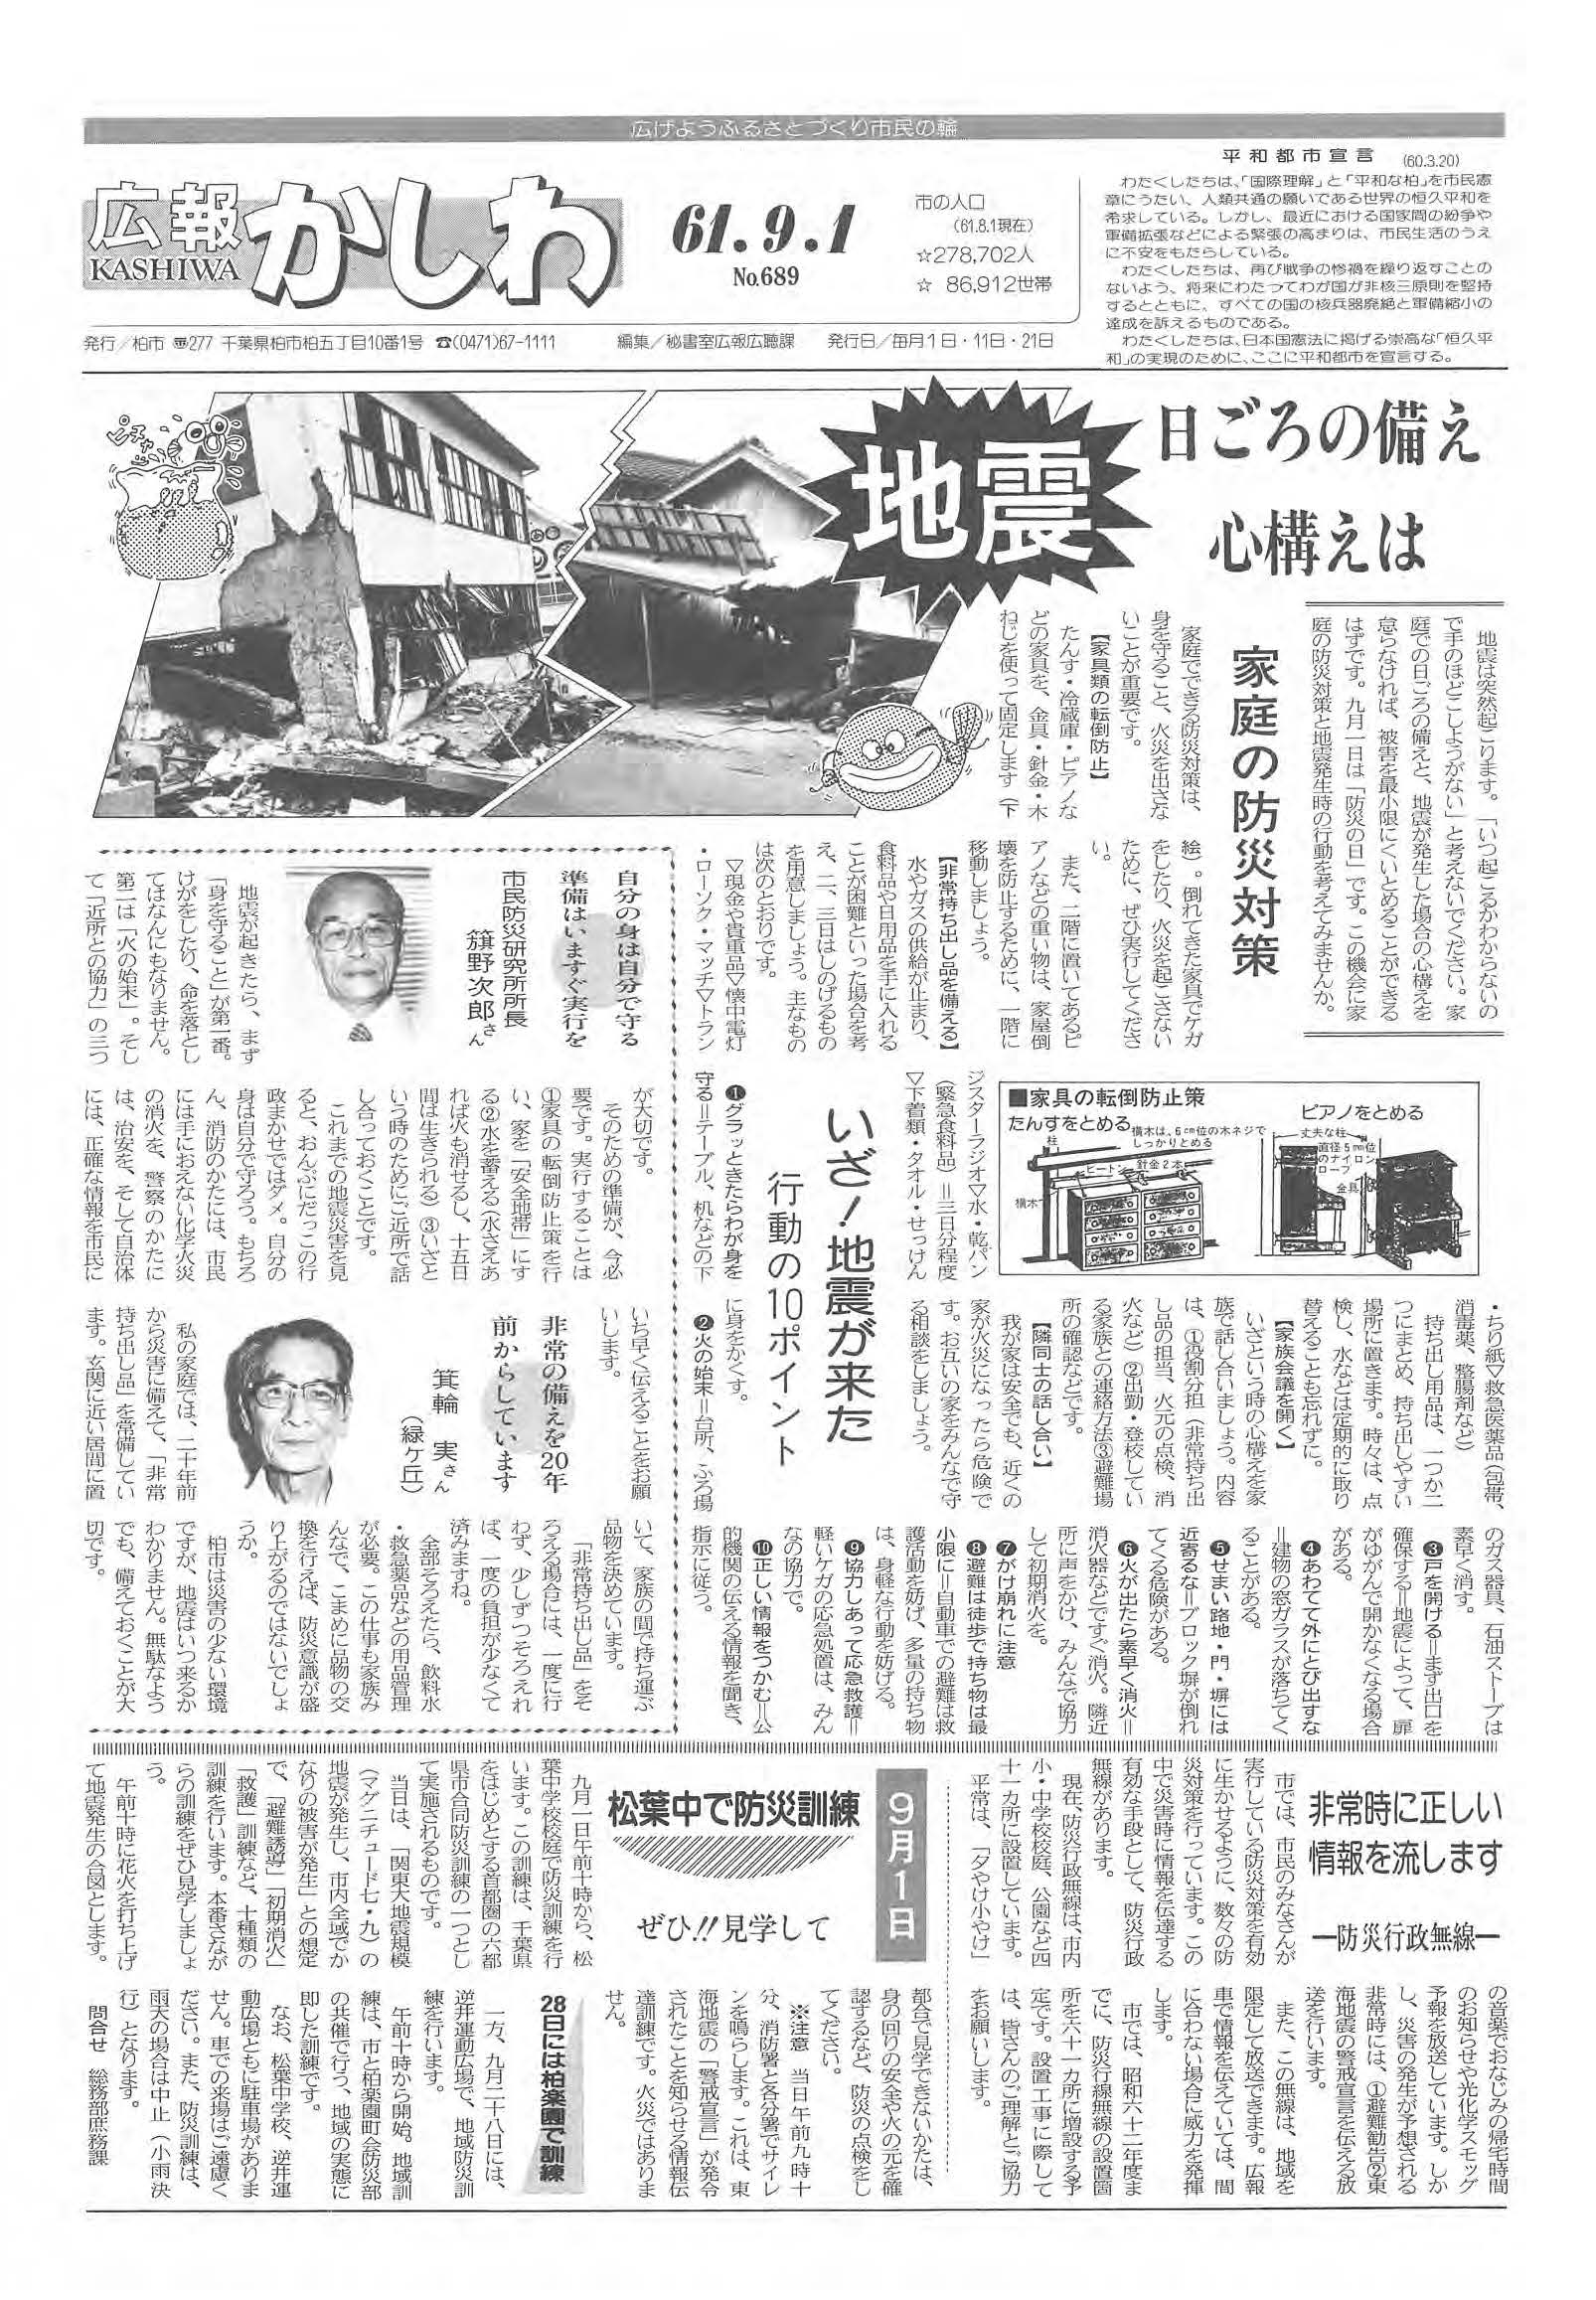 広報かしわ　昭和61年9月1日発行　689号